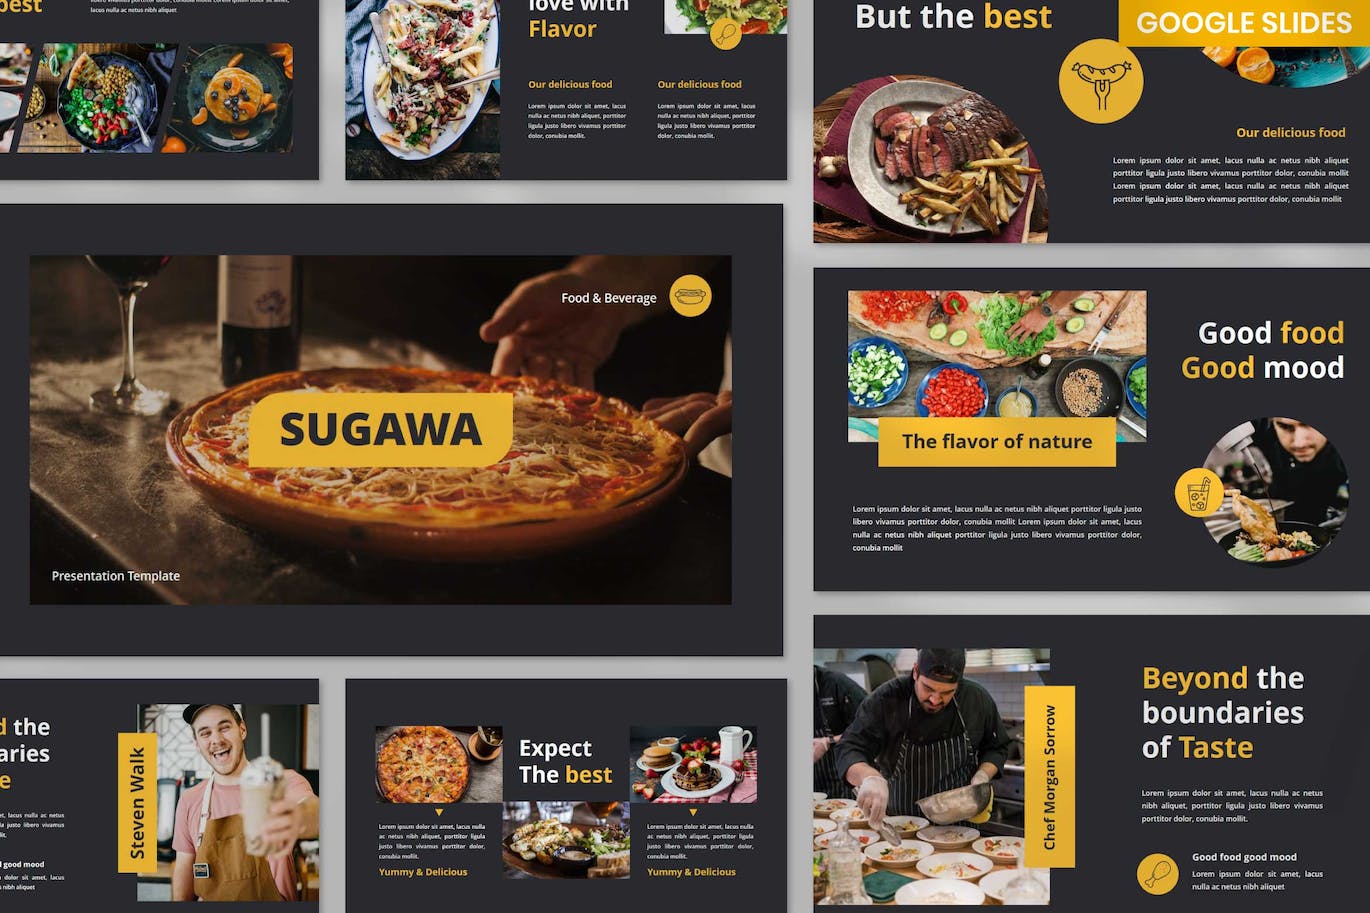 餐厅餐馆美食谷歌幻灯片模板下载 Sugawa Restaurant Google Slides 幻灯图表 第1张